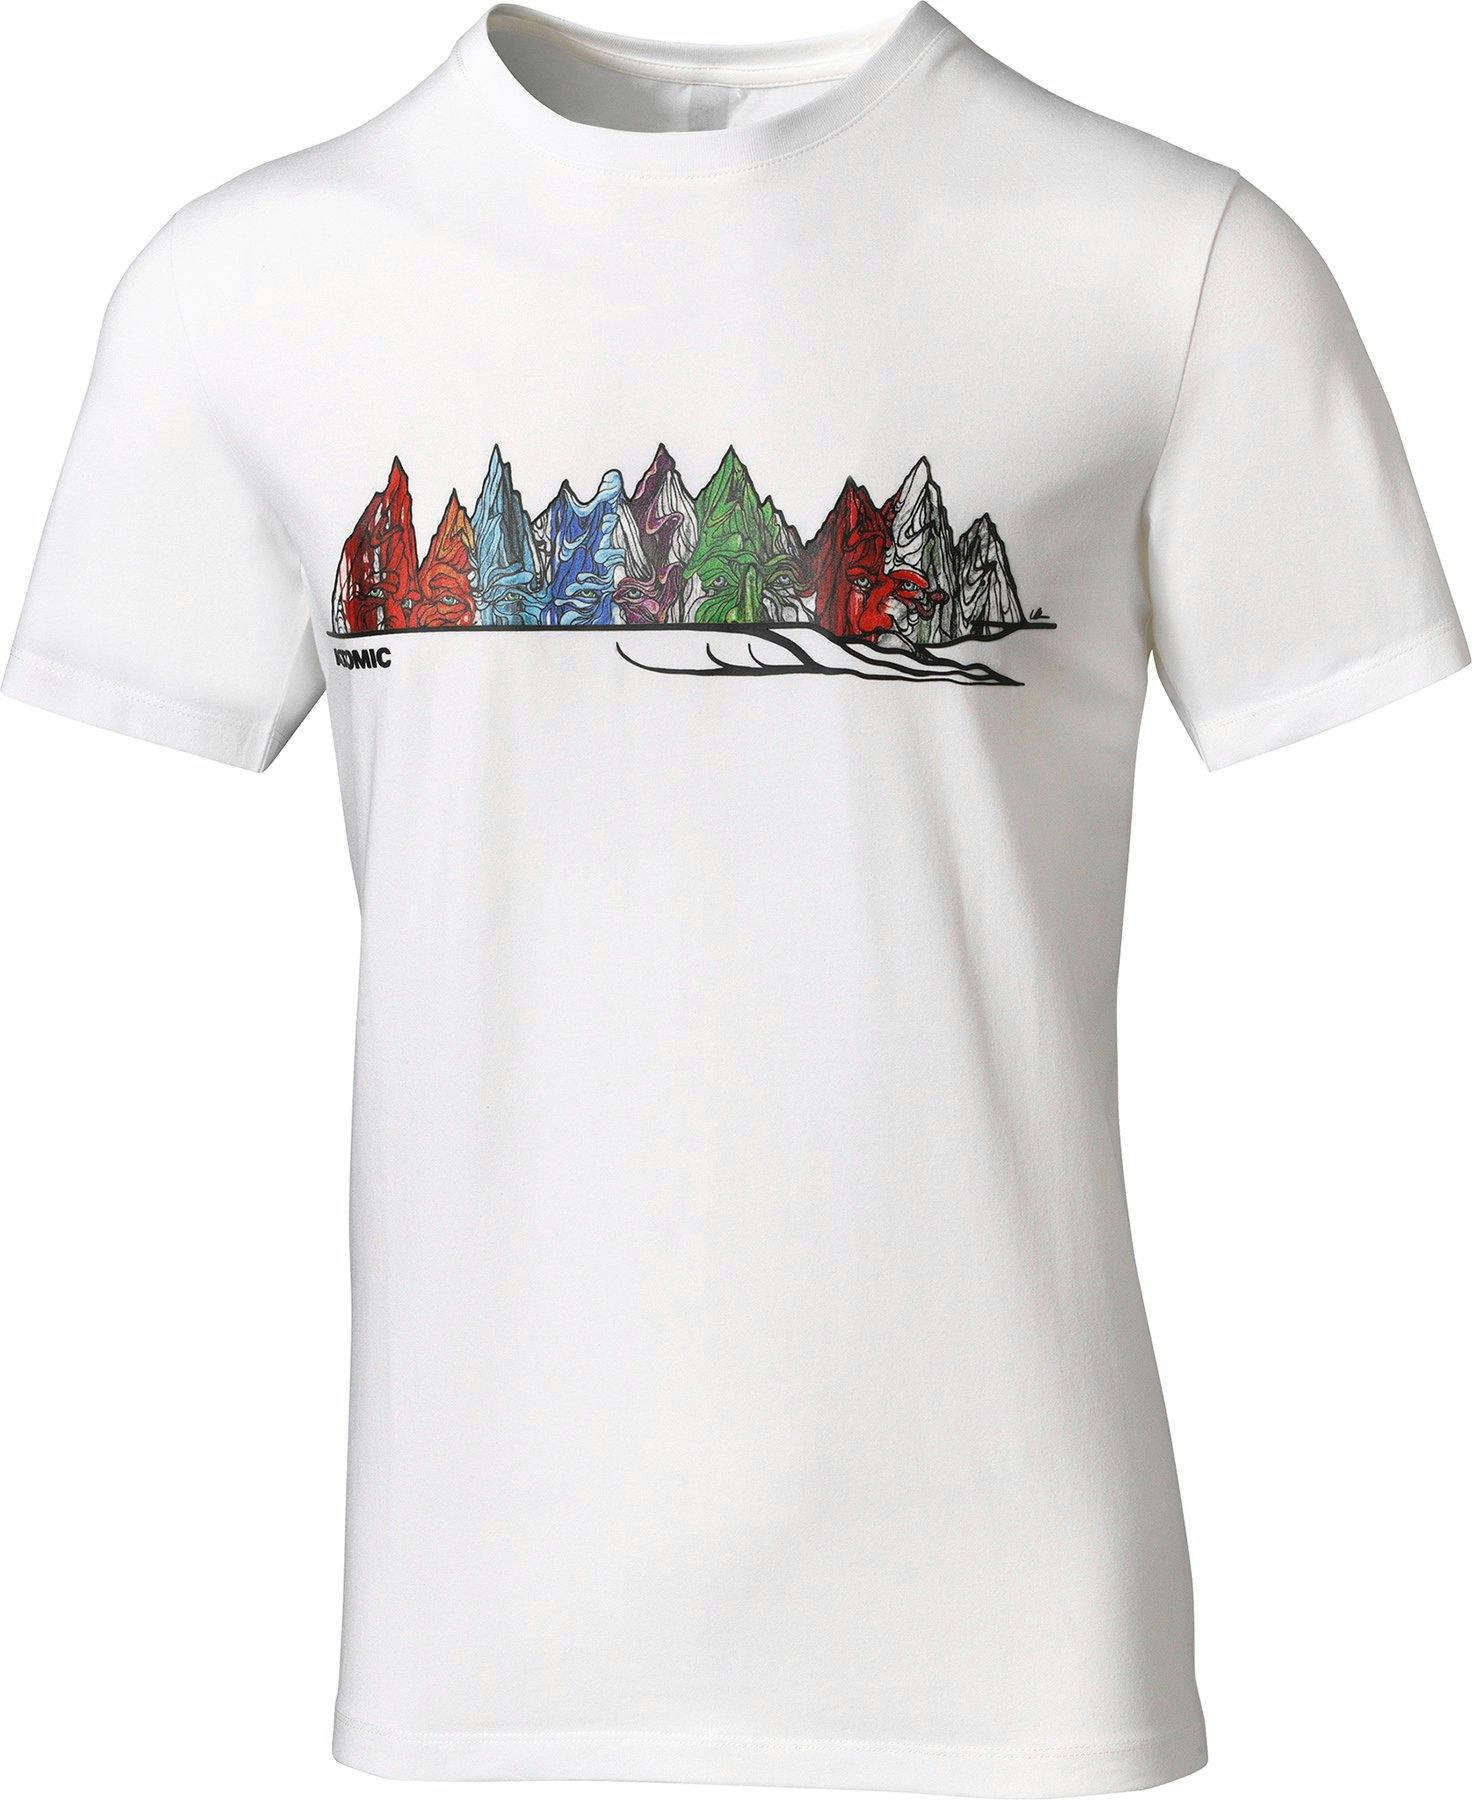 Product image for Bent Chetler Short Sleeve T-Shirt - Unisex